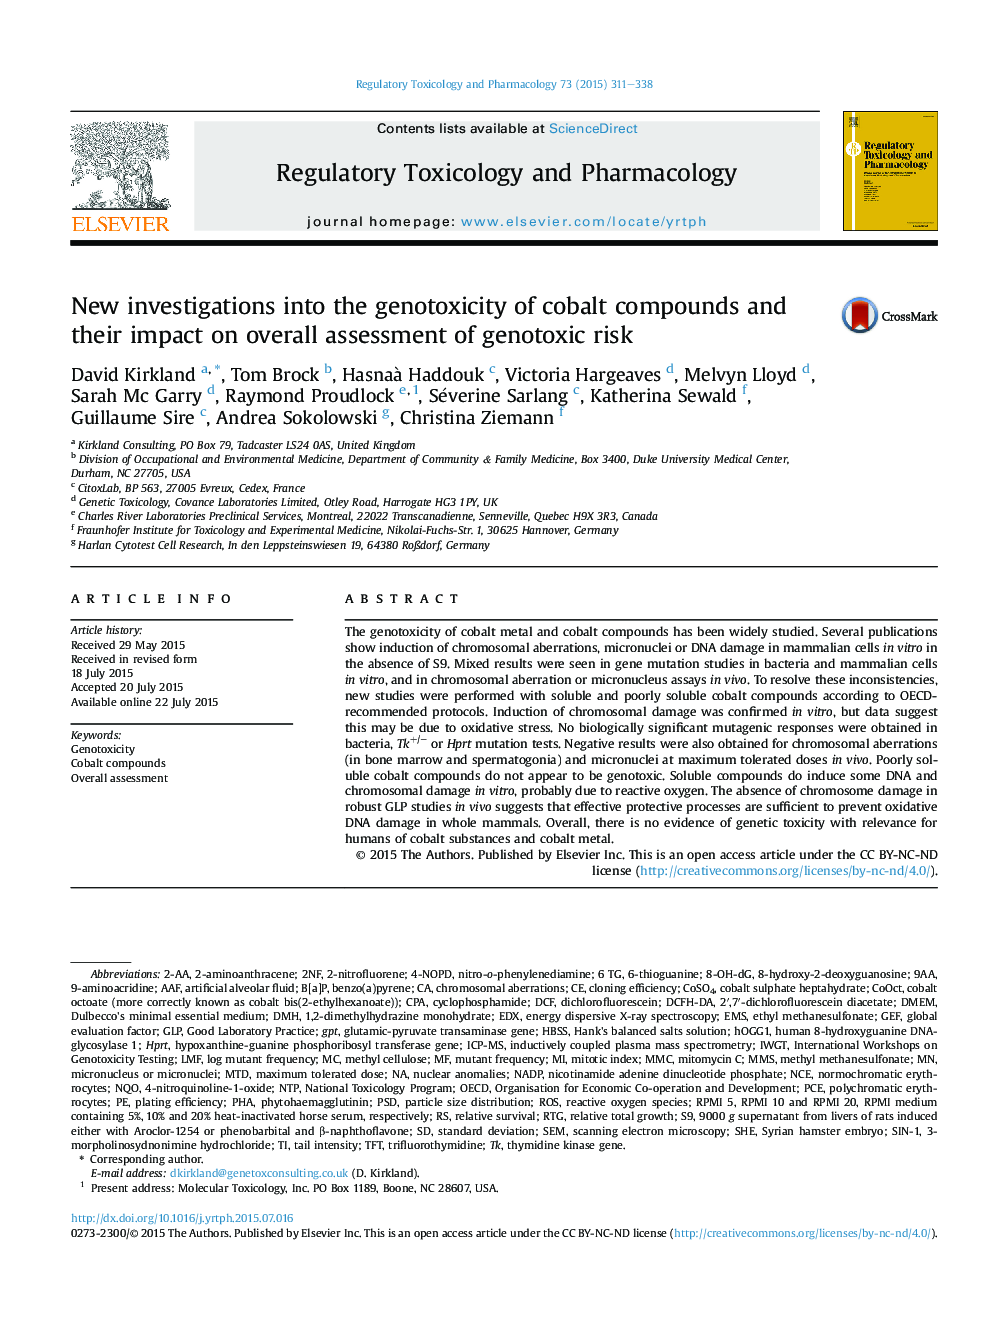 تحقیقات جدید در مورد ژن سمیت ترکیبات کبالت و تاثیر آنها بر ارزیابی کلی خطر ابتلا به ژنوتوکسیسم 